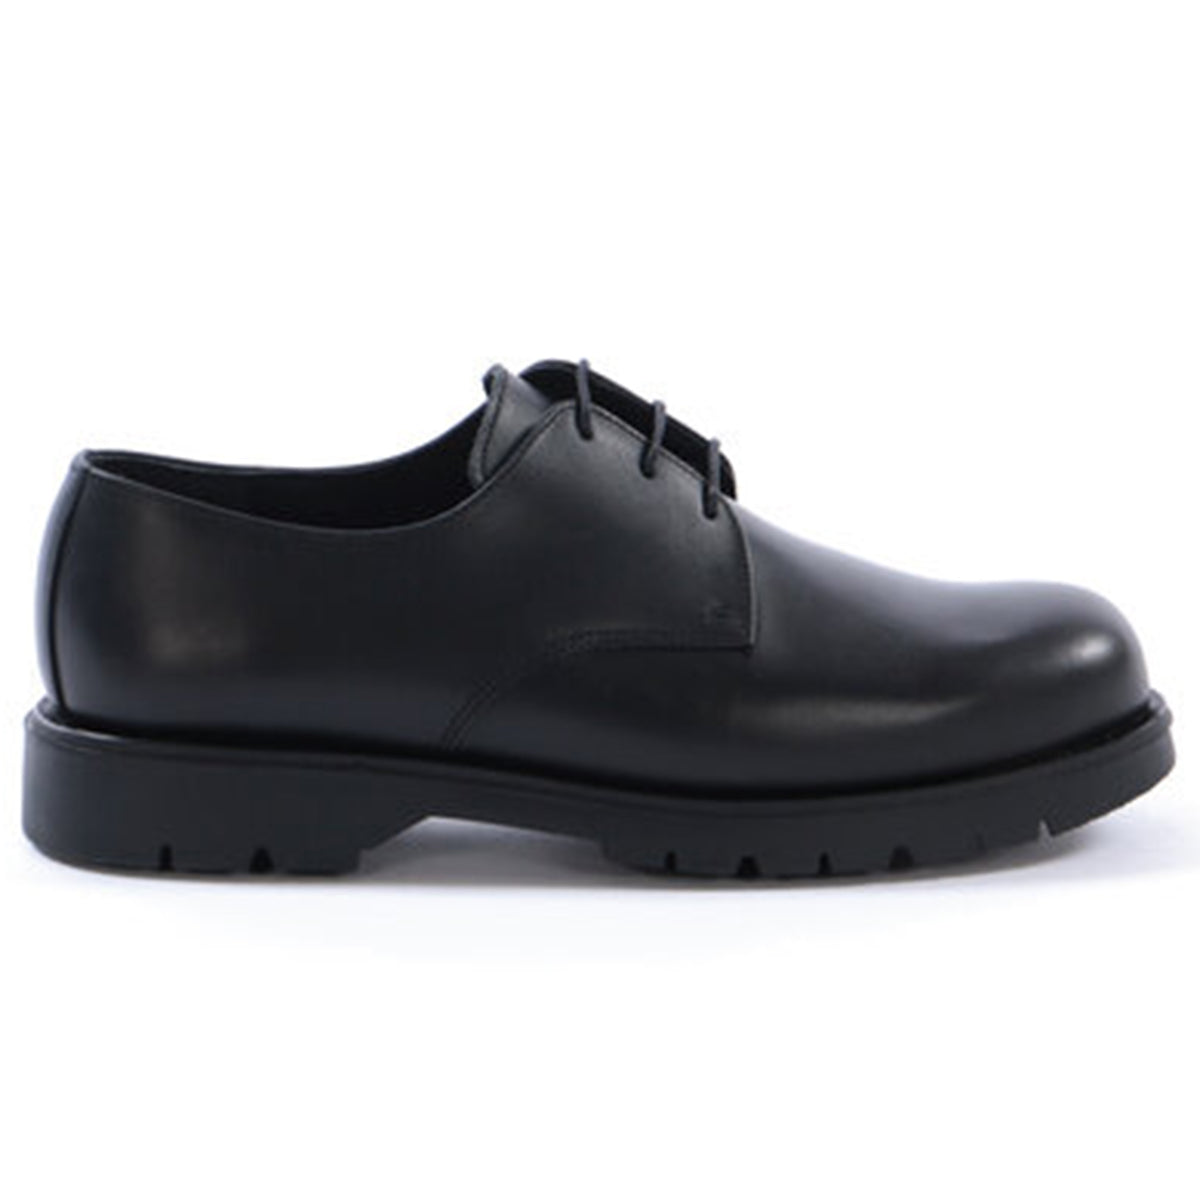 Kleman x Ecole de Pensée Dormance Derby Shoe Collaboration Footwear Black Side Profile